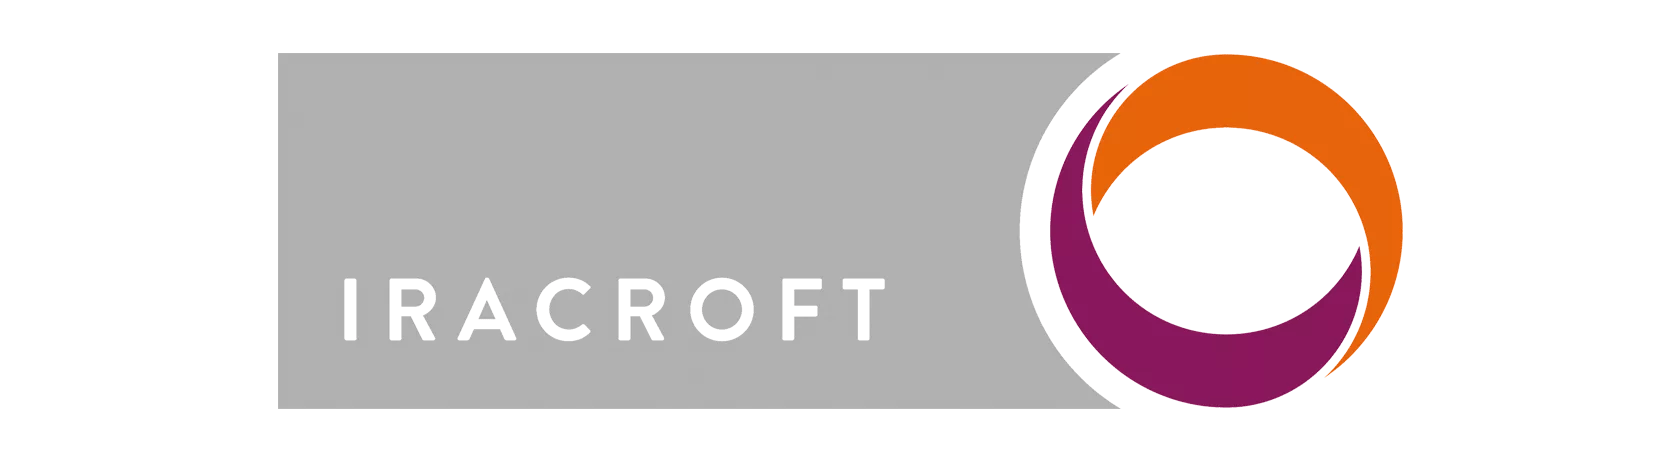 Iracroft logo